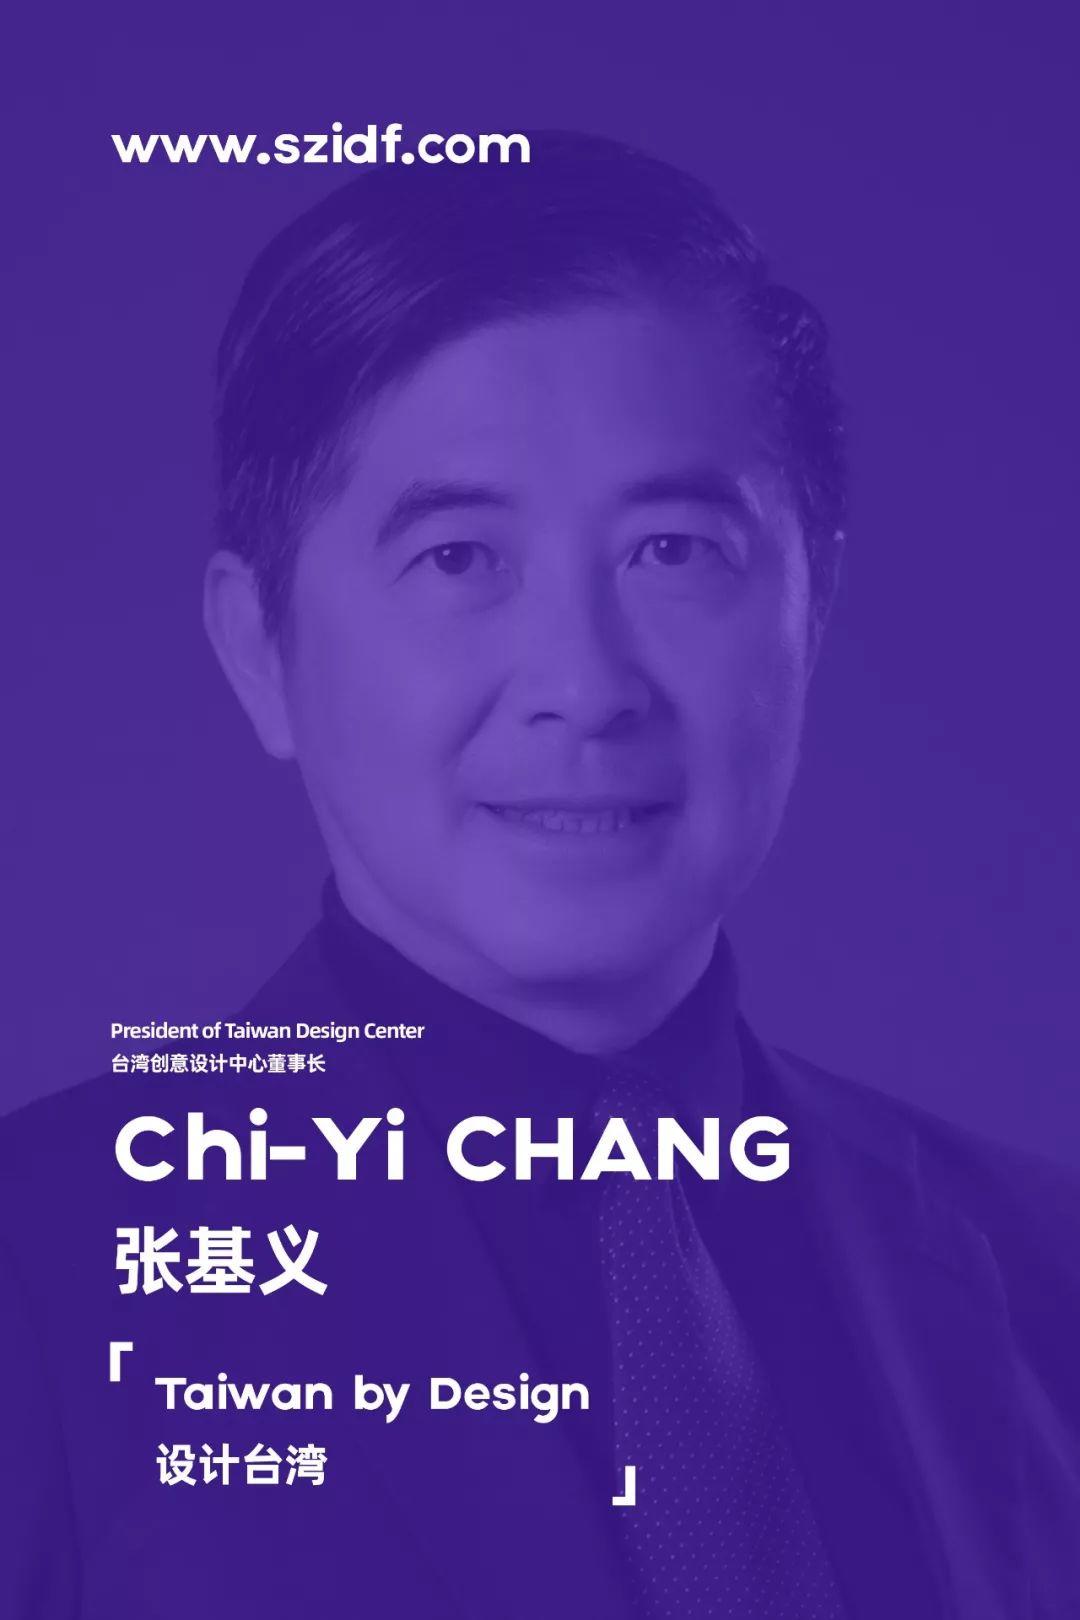 張基義在2019全球設計價值峰會演講「設計台灣」海報